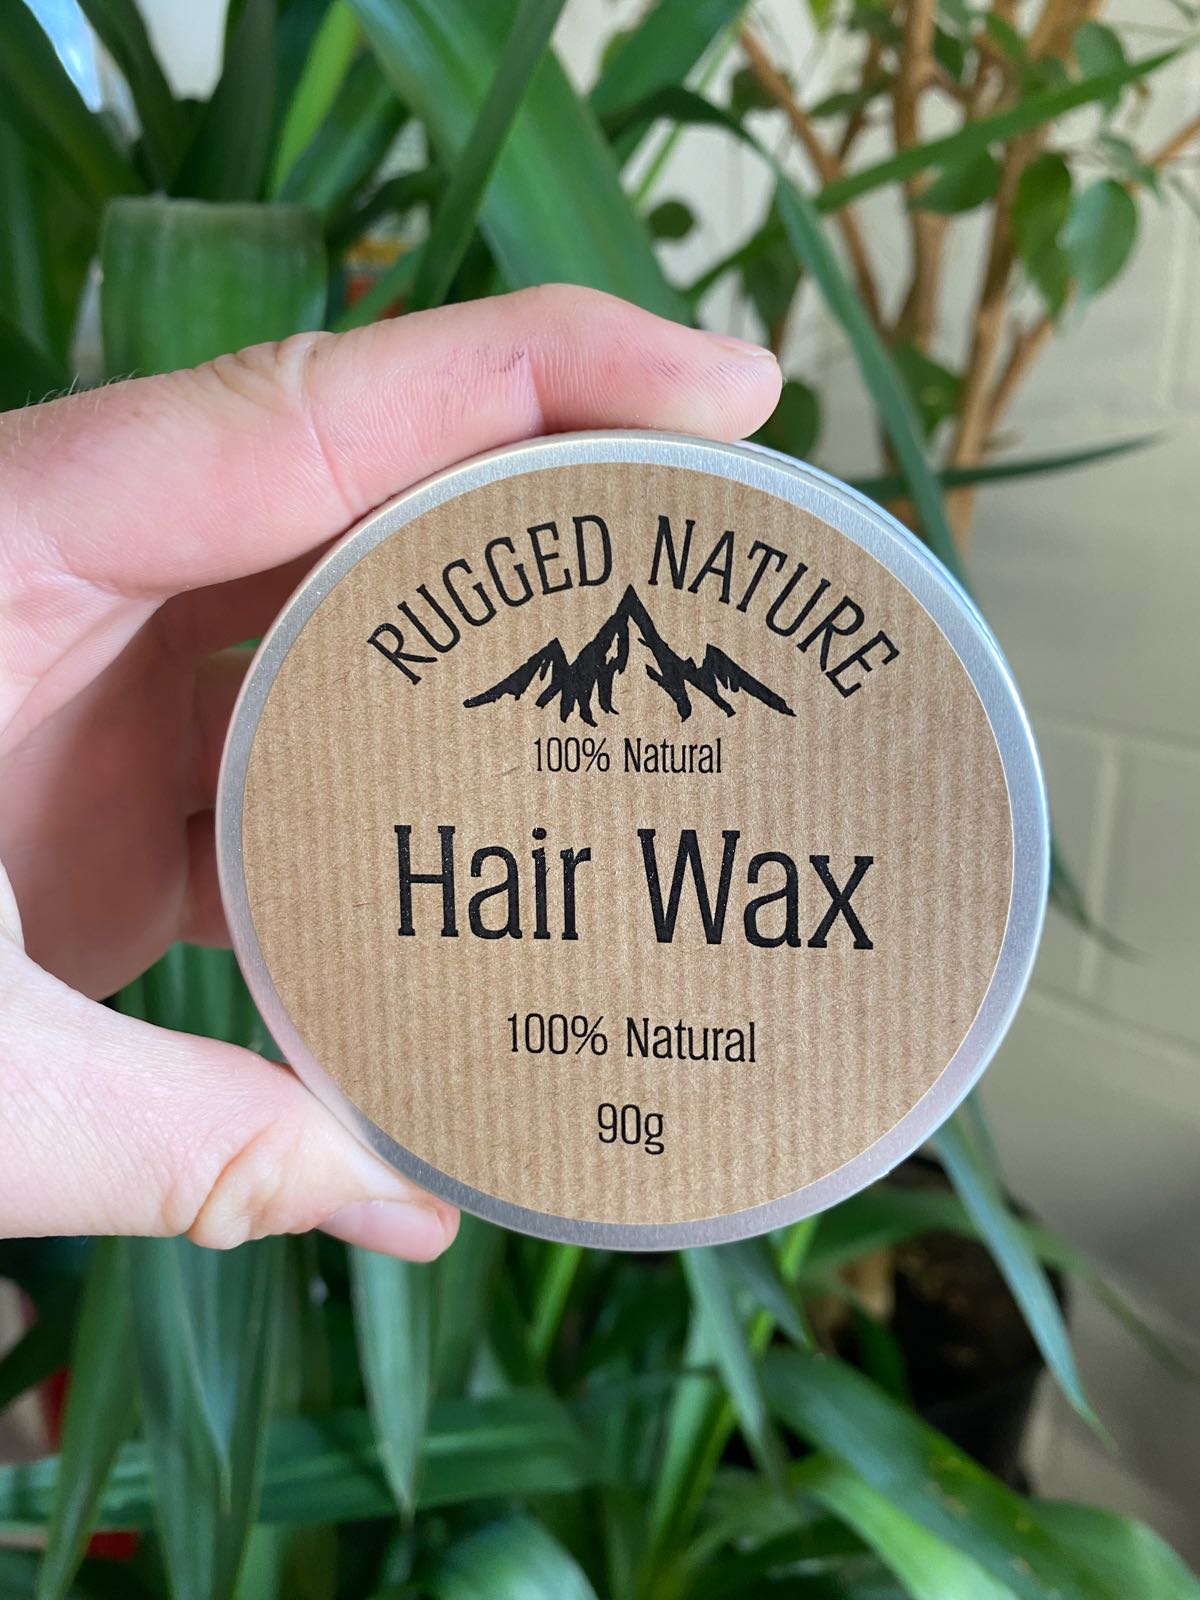 Hair Wax | Rugged Nature